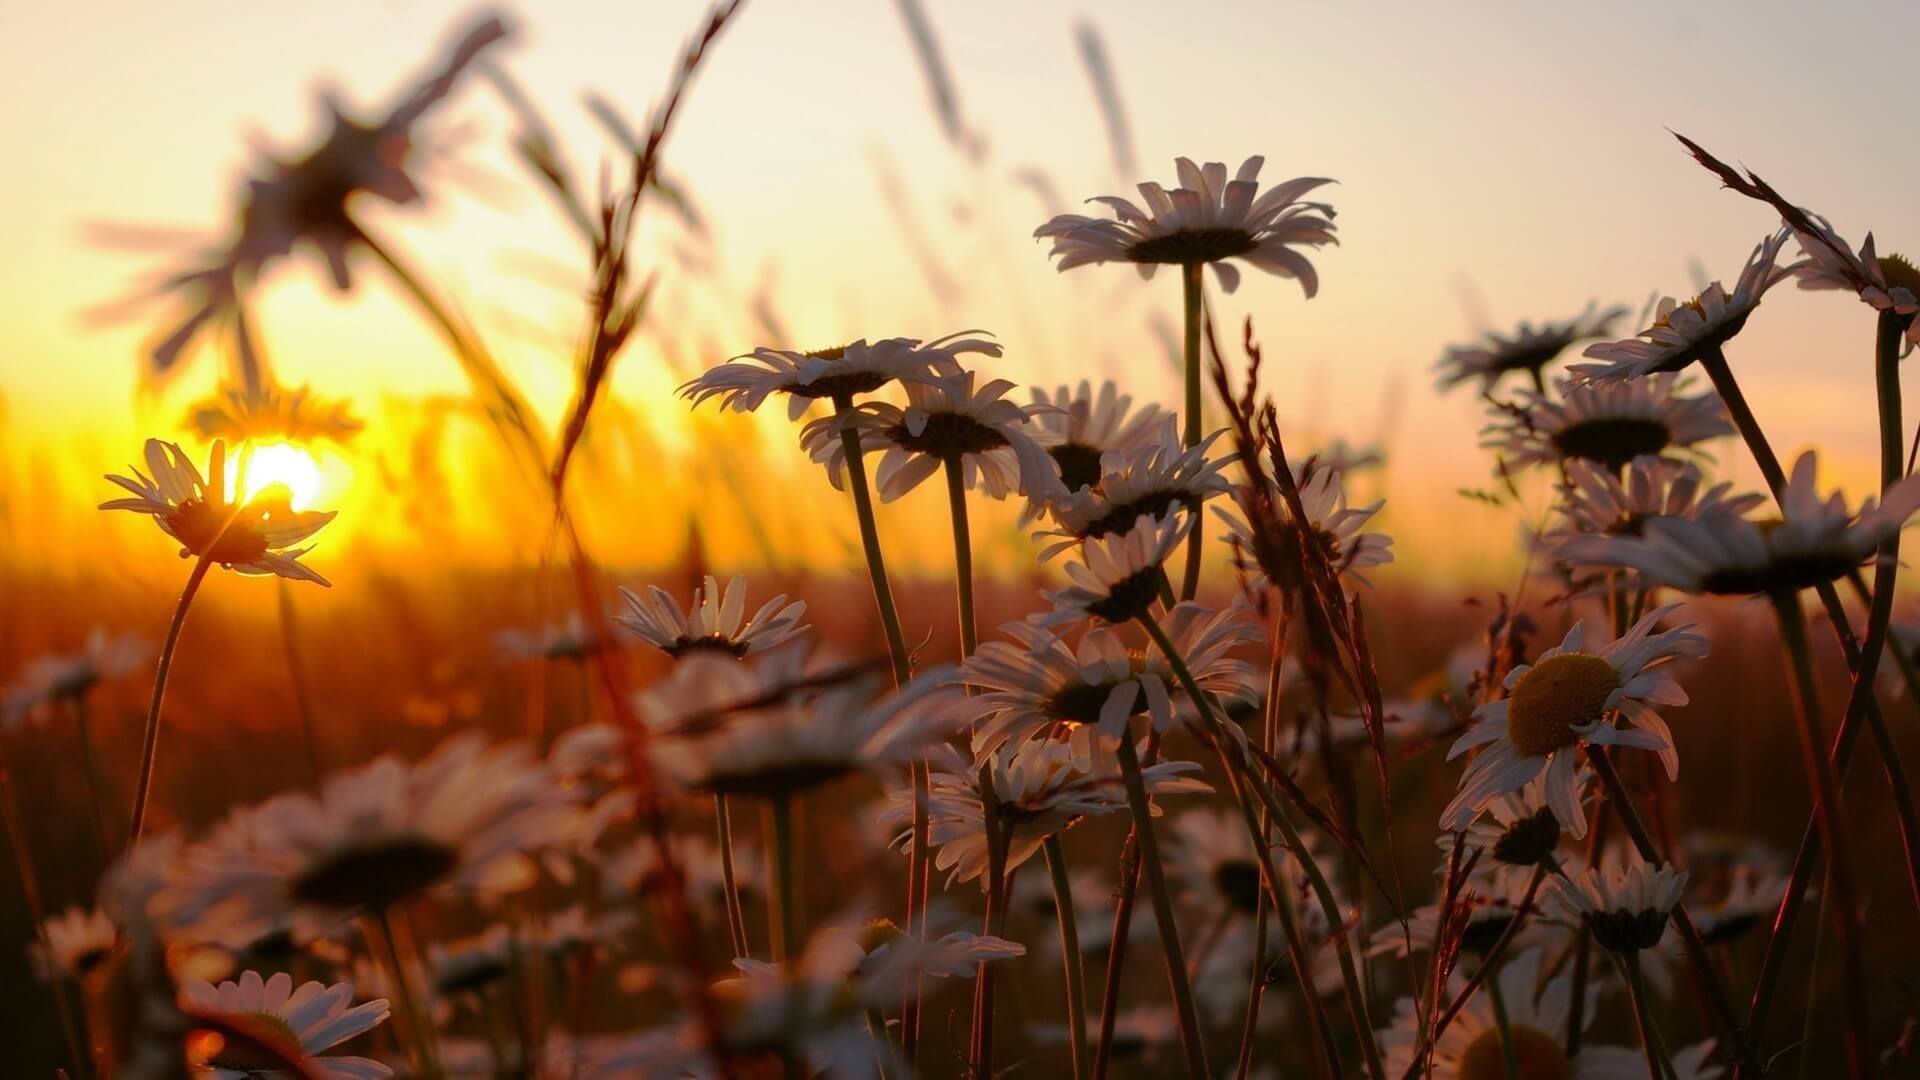 Daisies-Sunset-Nature